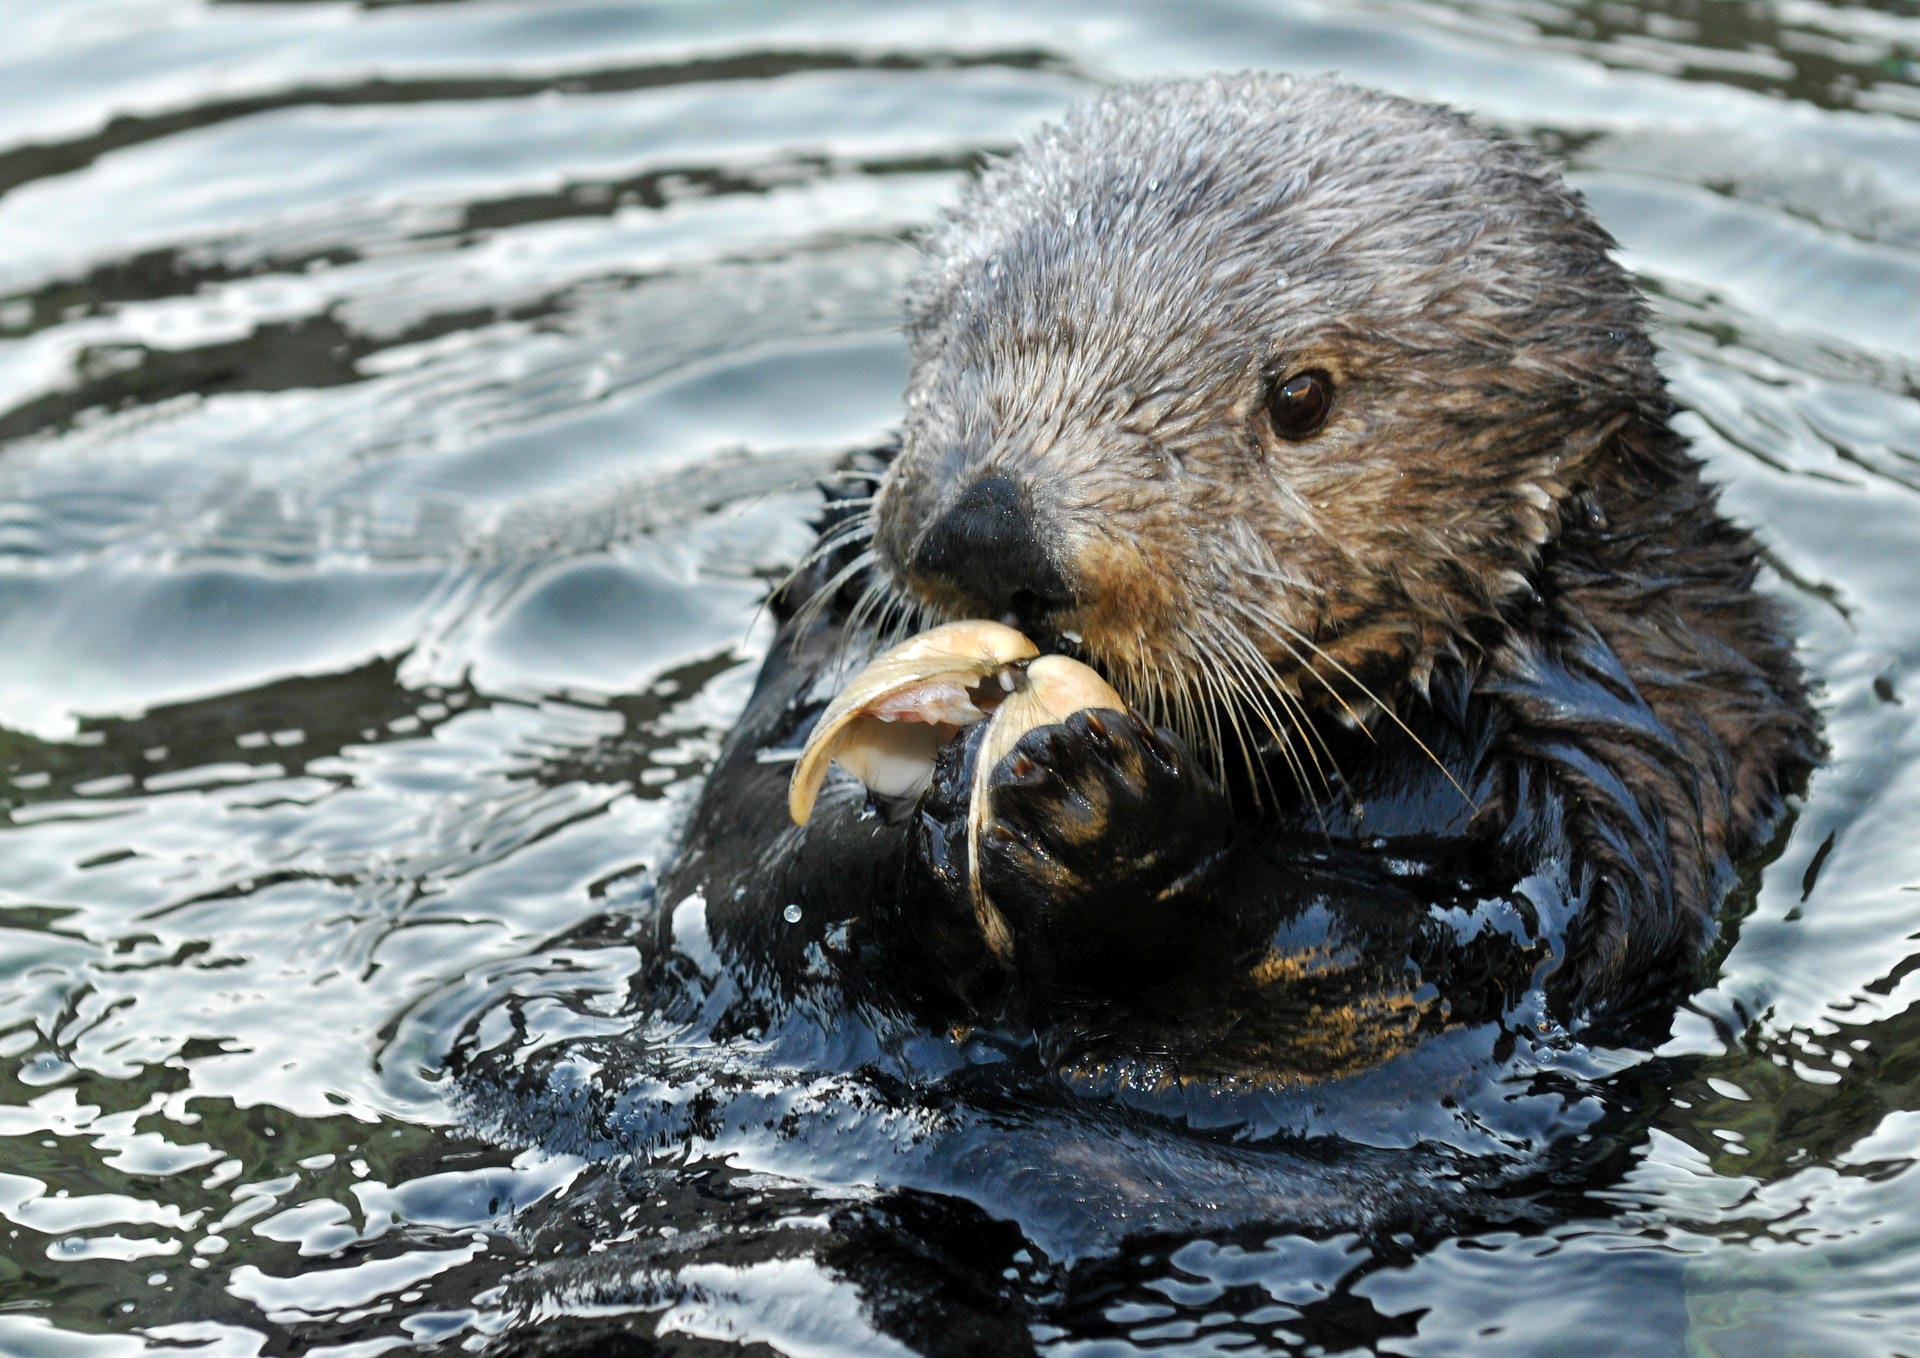 Seeotter kontrollieren die Ausbreitung von anderen Meereslebewesen wie Seeigel, indem sie diese fressen.